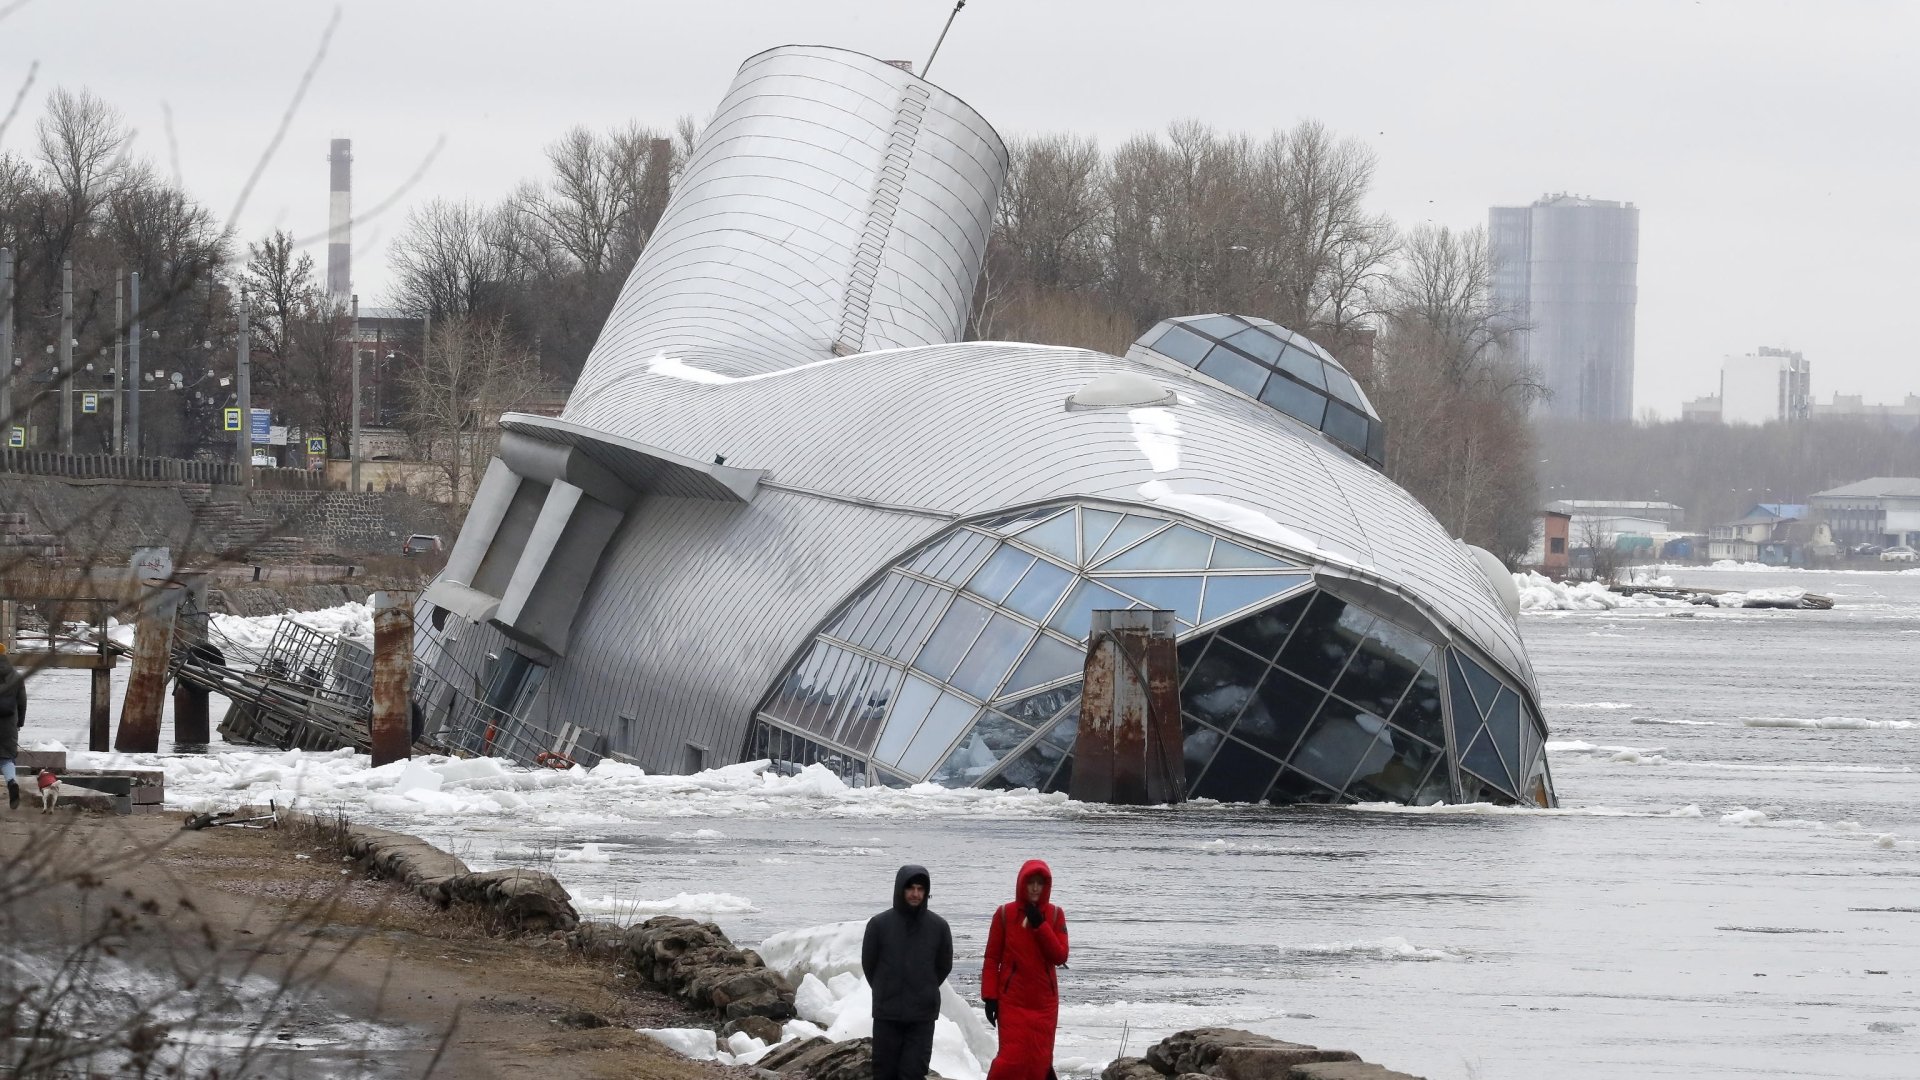 Il sensazionale ristorante galleggiante russo è affondato nel fiume ➤ Buzzday.info